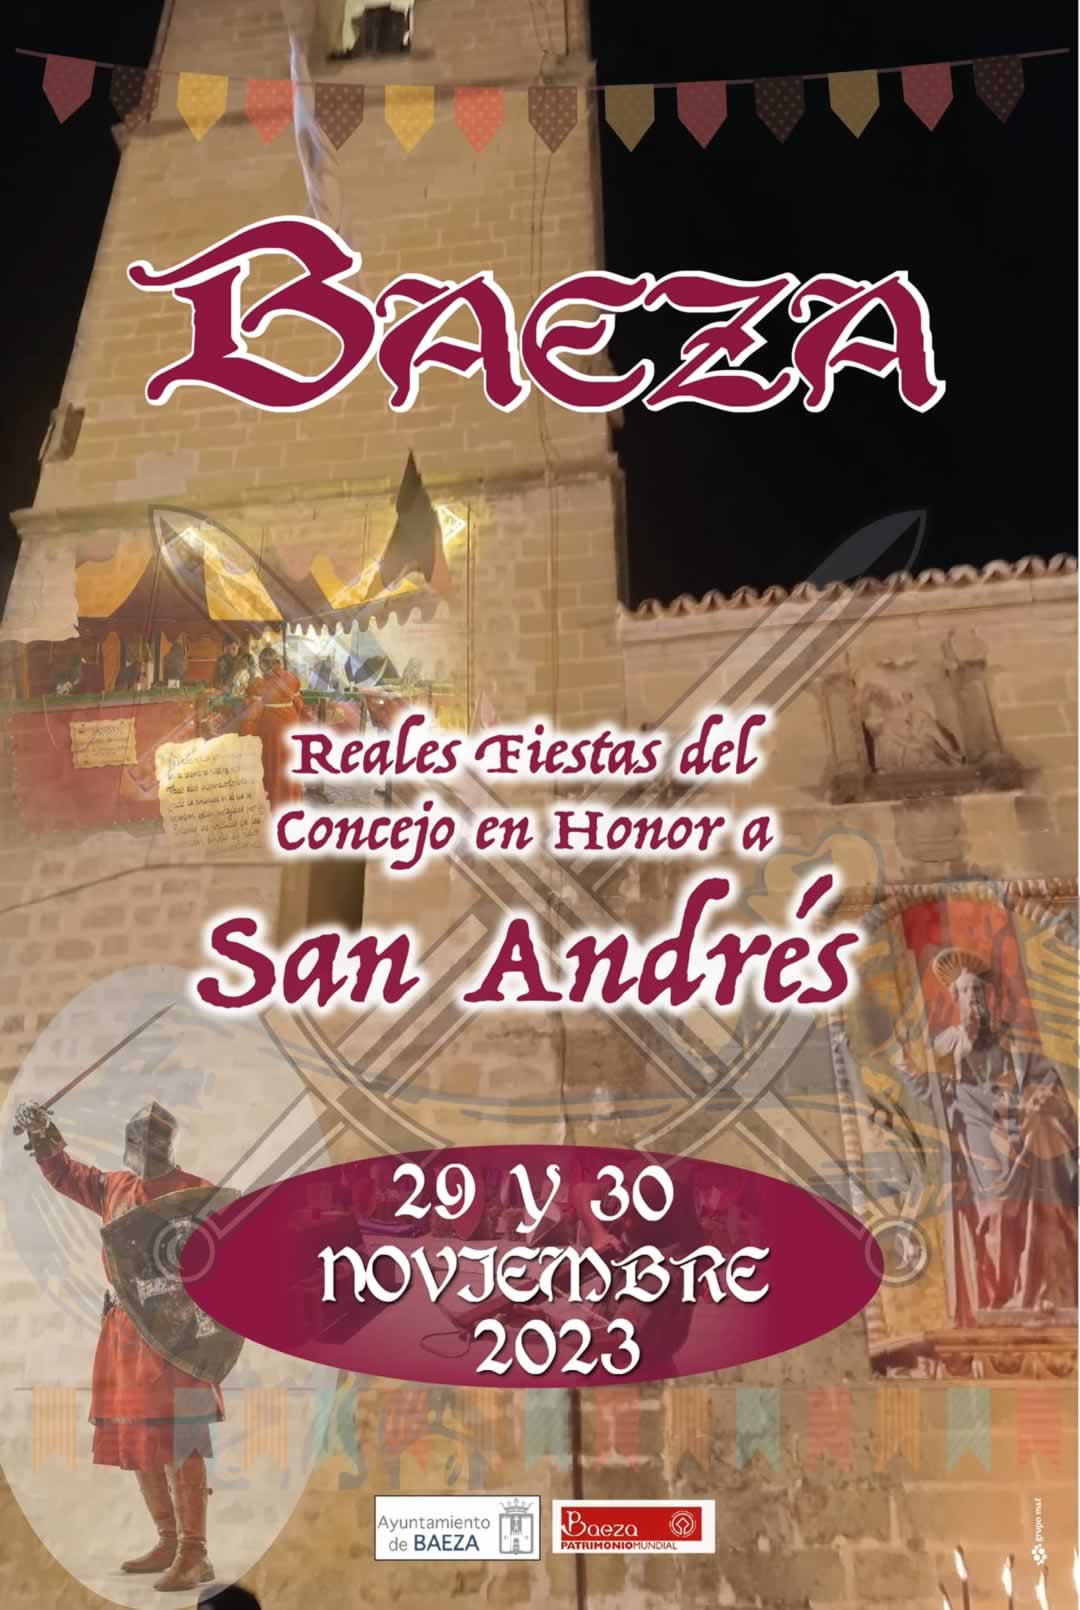 Mercado medieval de Baeza: Reales Fiestas del Concejo en honor a San Andrés 2023 Mercado medieval